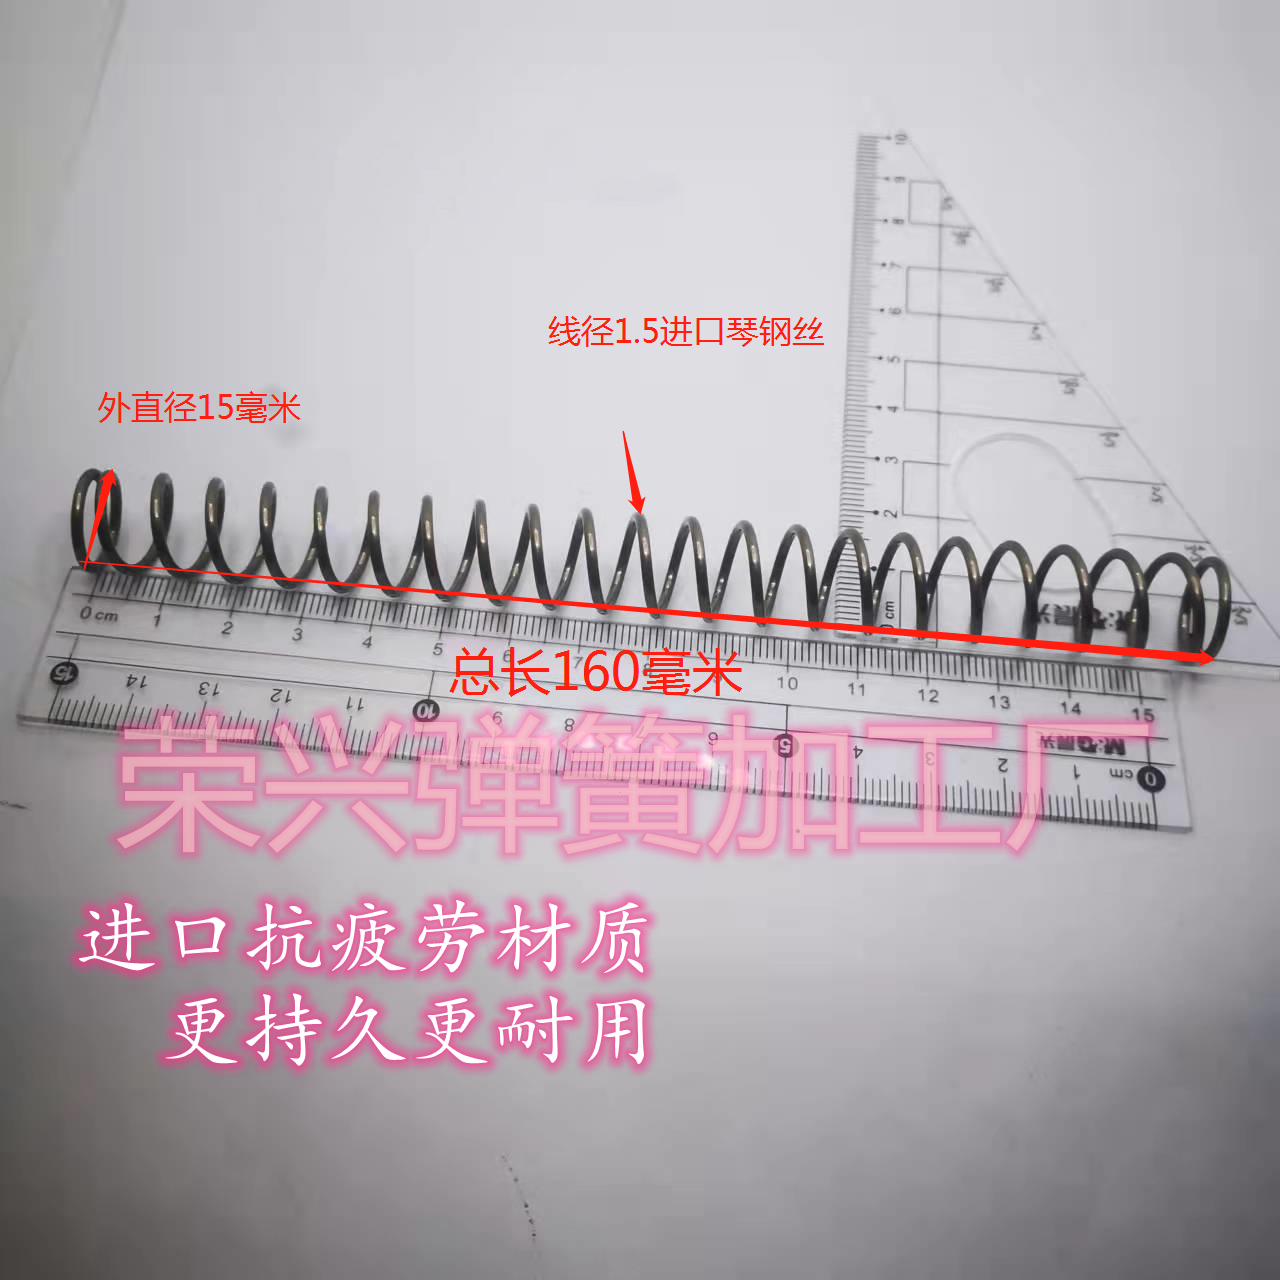 弹簧进口琴钢丝材质抗疲劳1.5/1.6线径外径15毫米长度150毫米压簧